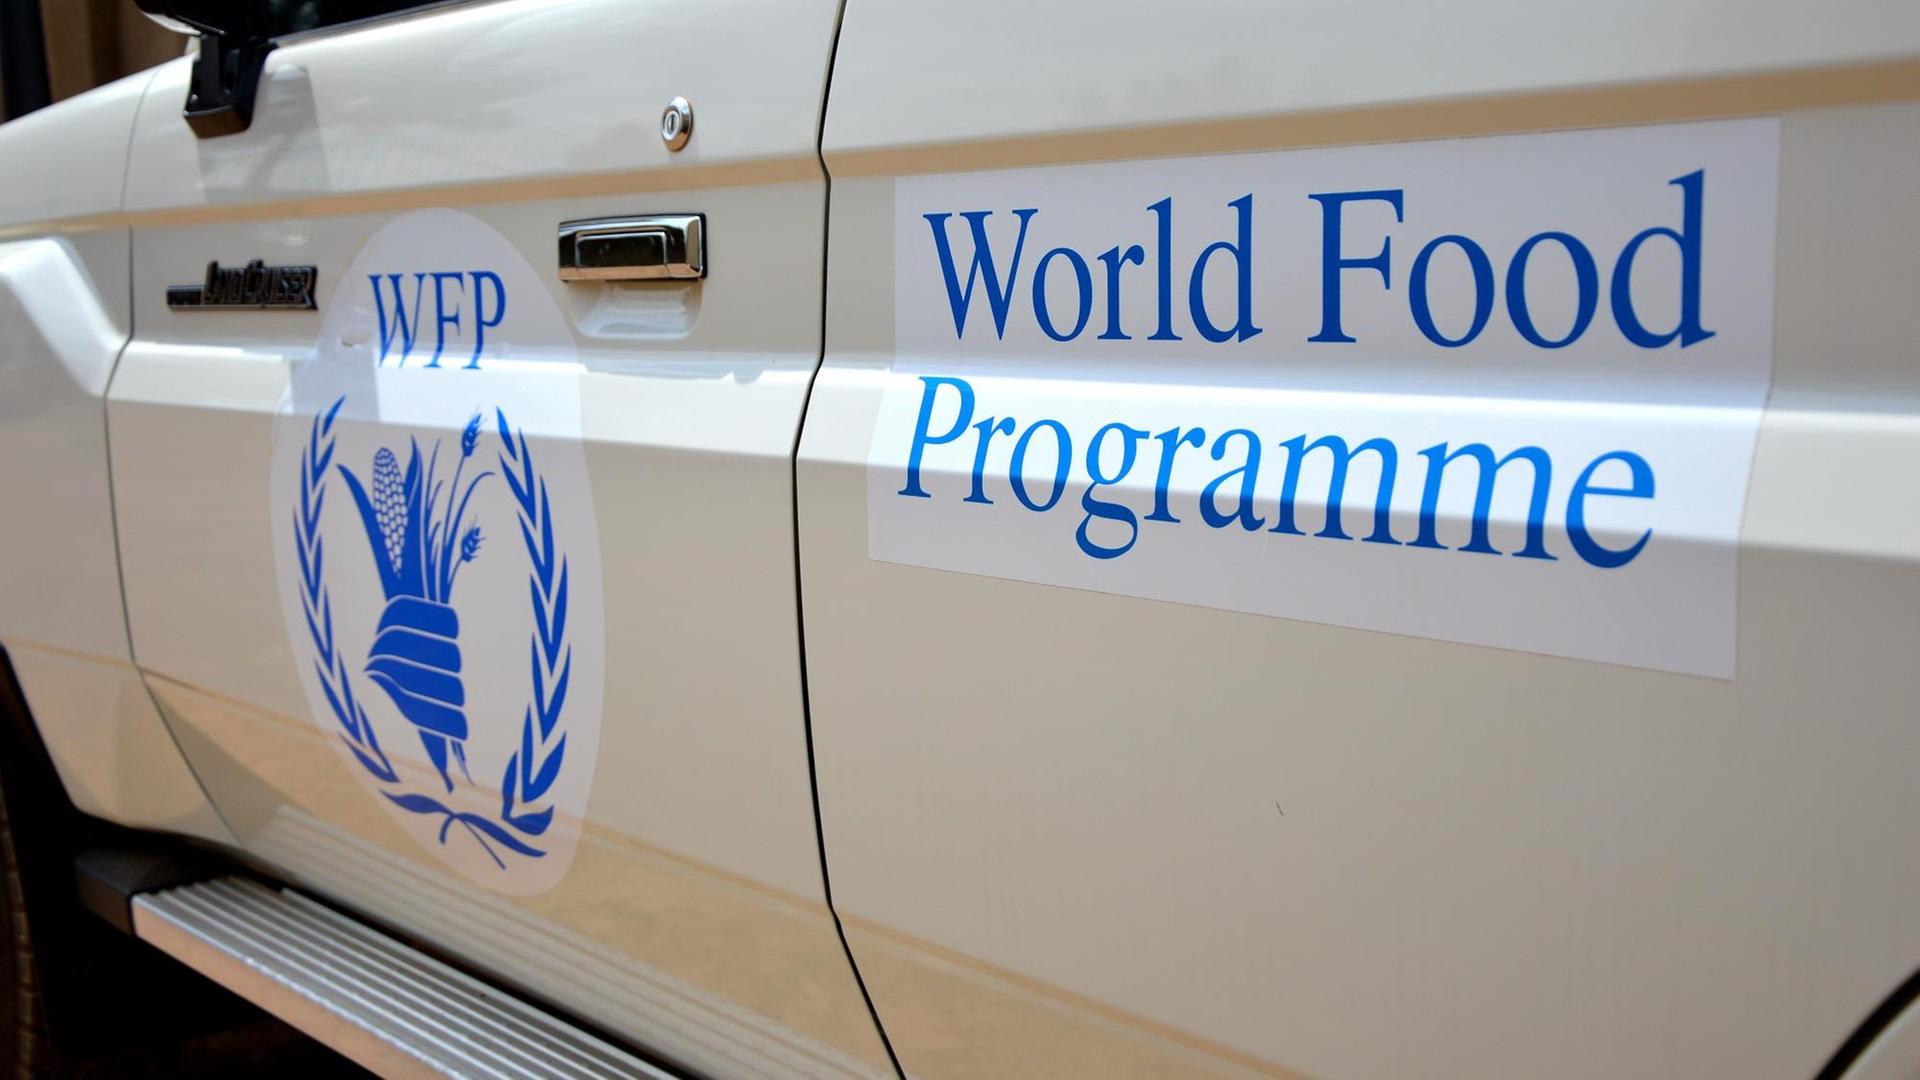 Das Bild zeigt die Fahrertür eines weißen Autos mit dem Logo und dem Schriftzug des WPF in blau.